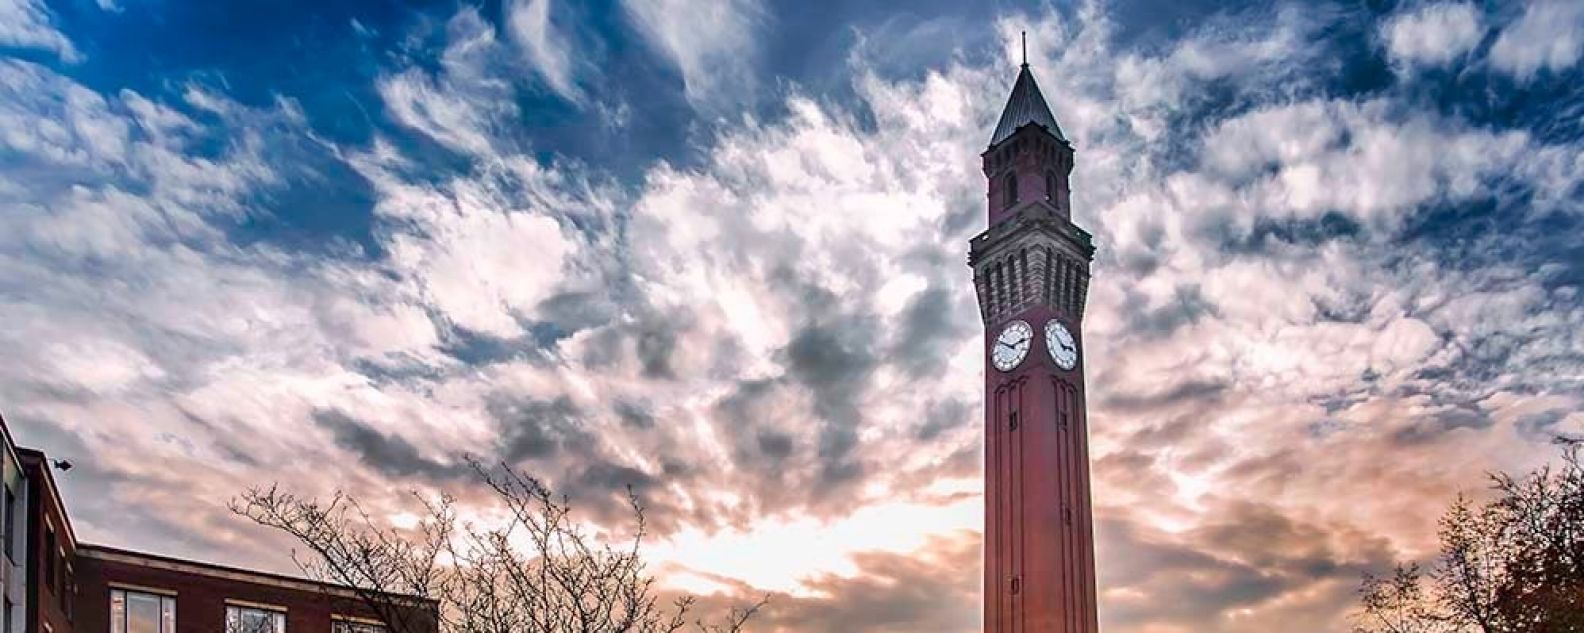 버밍엄 대학교 캠퍼스 및 시계탑 전경